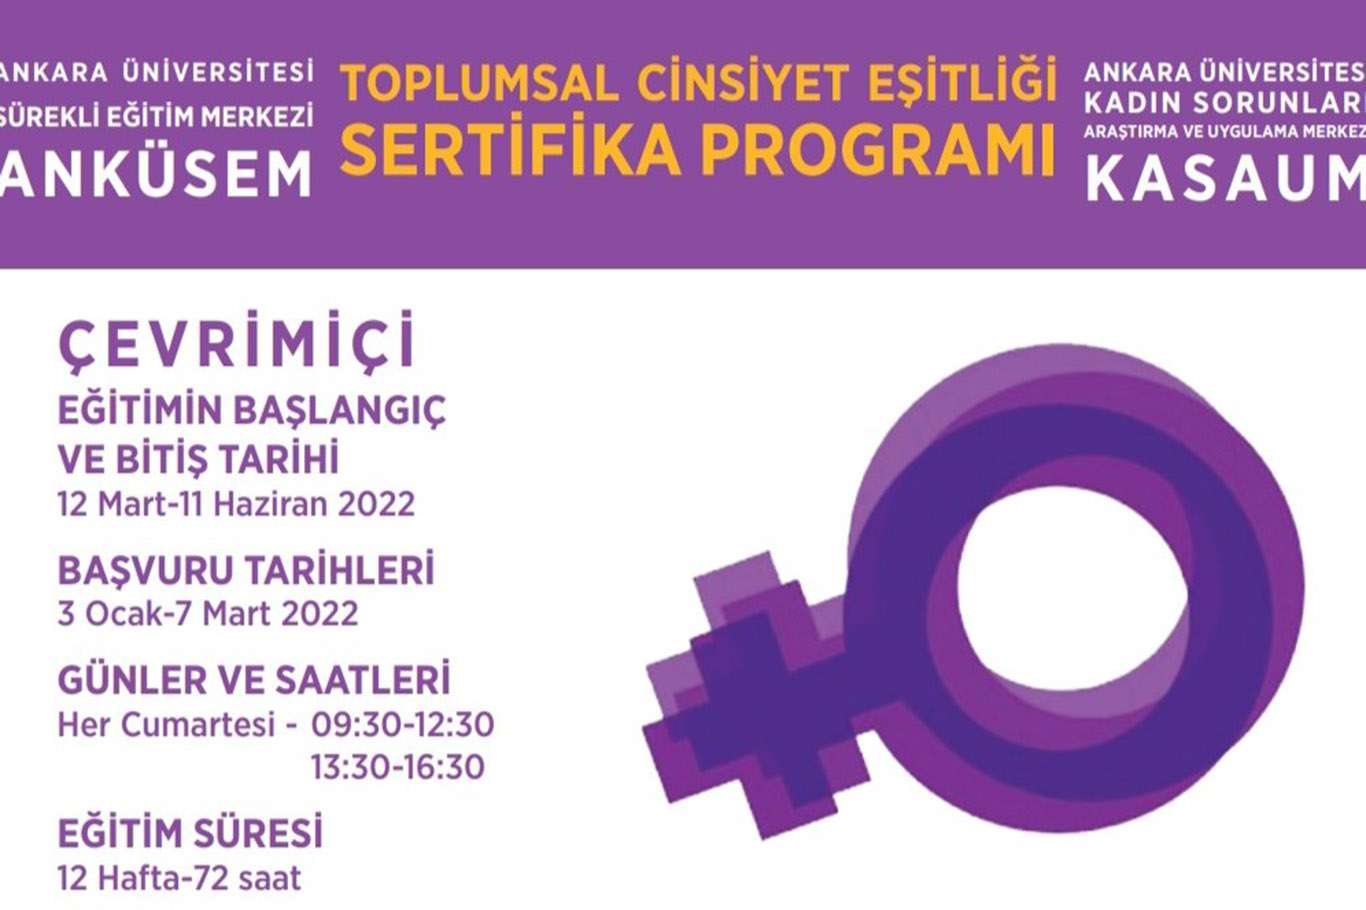 Ankara Üniversitesinin düzenleyeceği "Toplumsal Cinsiyet Eşitliği" programı tepki çekti